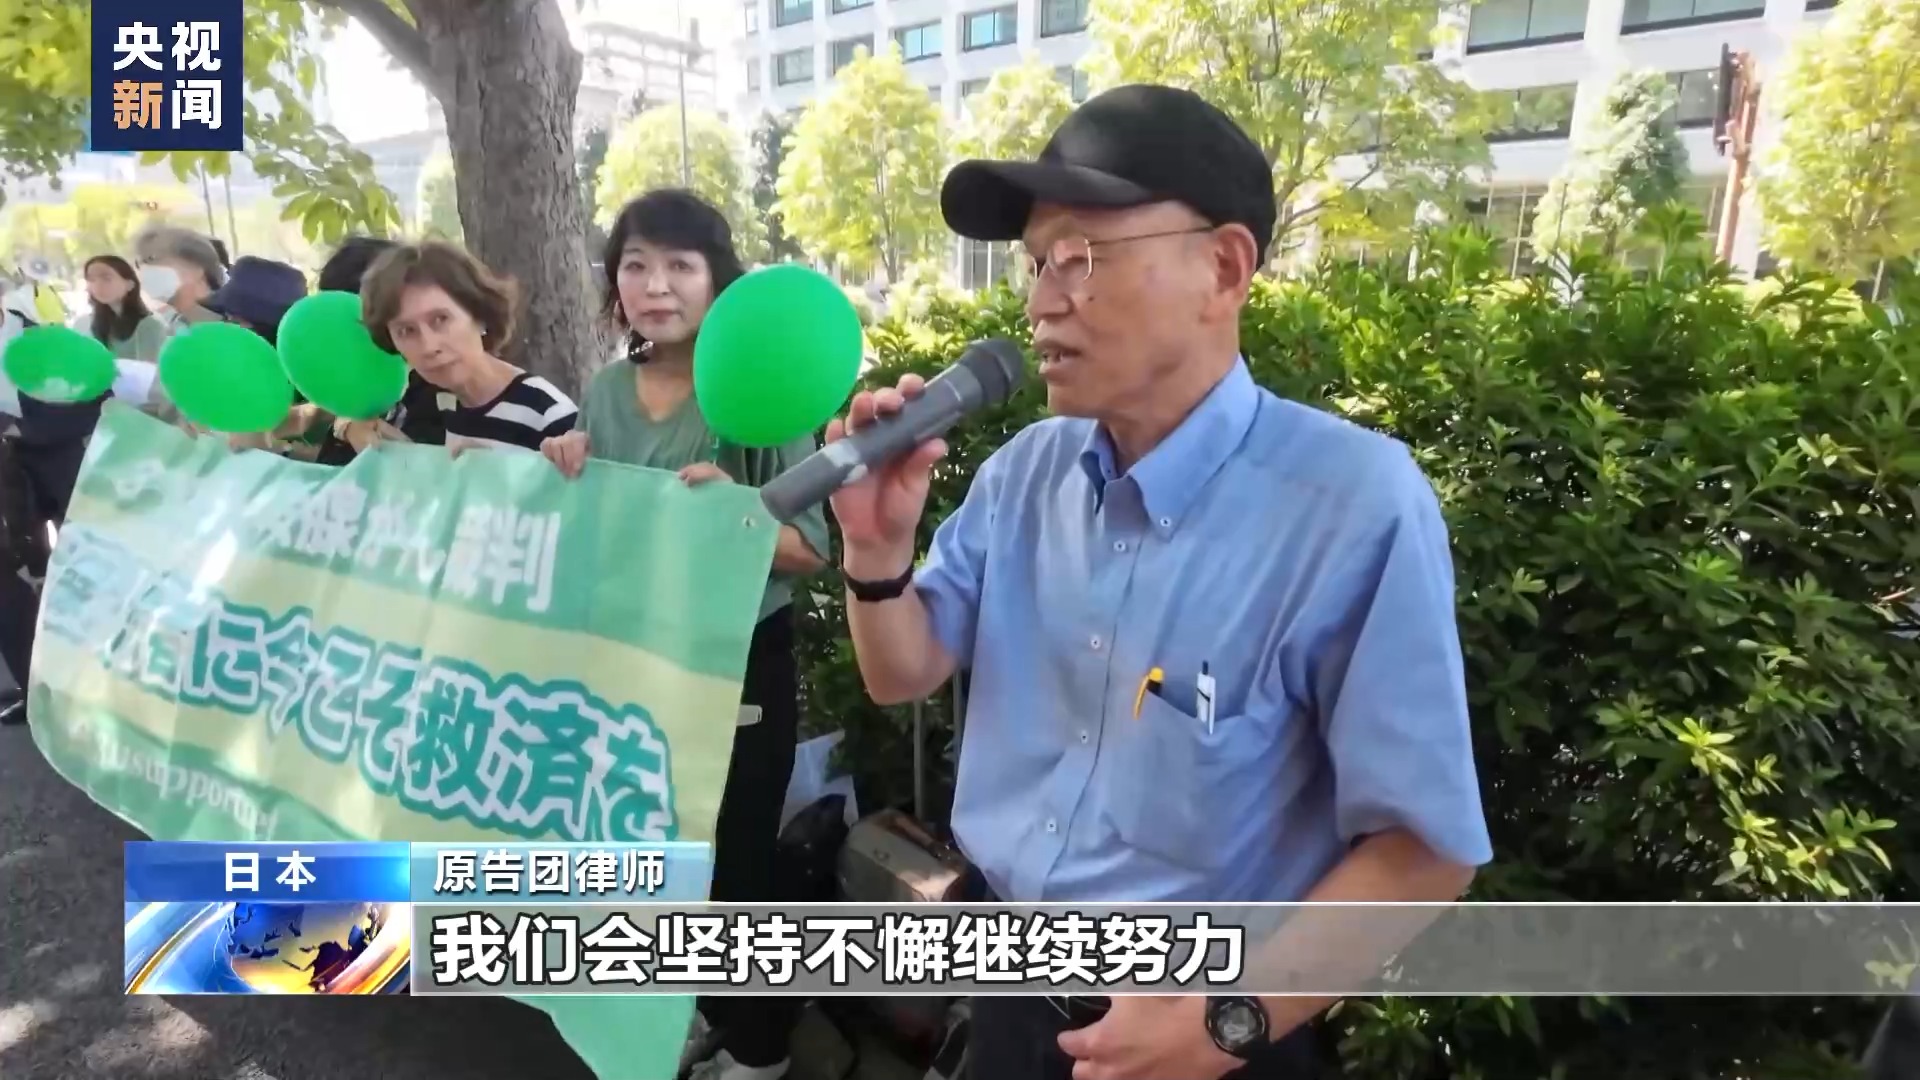 日本福岛县甲状腺癌患者状告东京电力公司 民众集会声援2